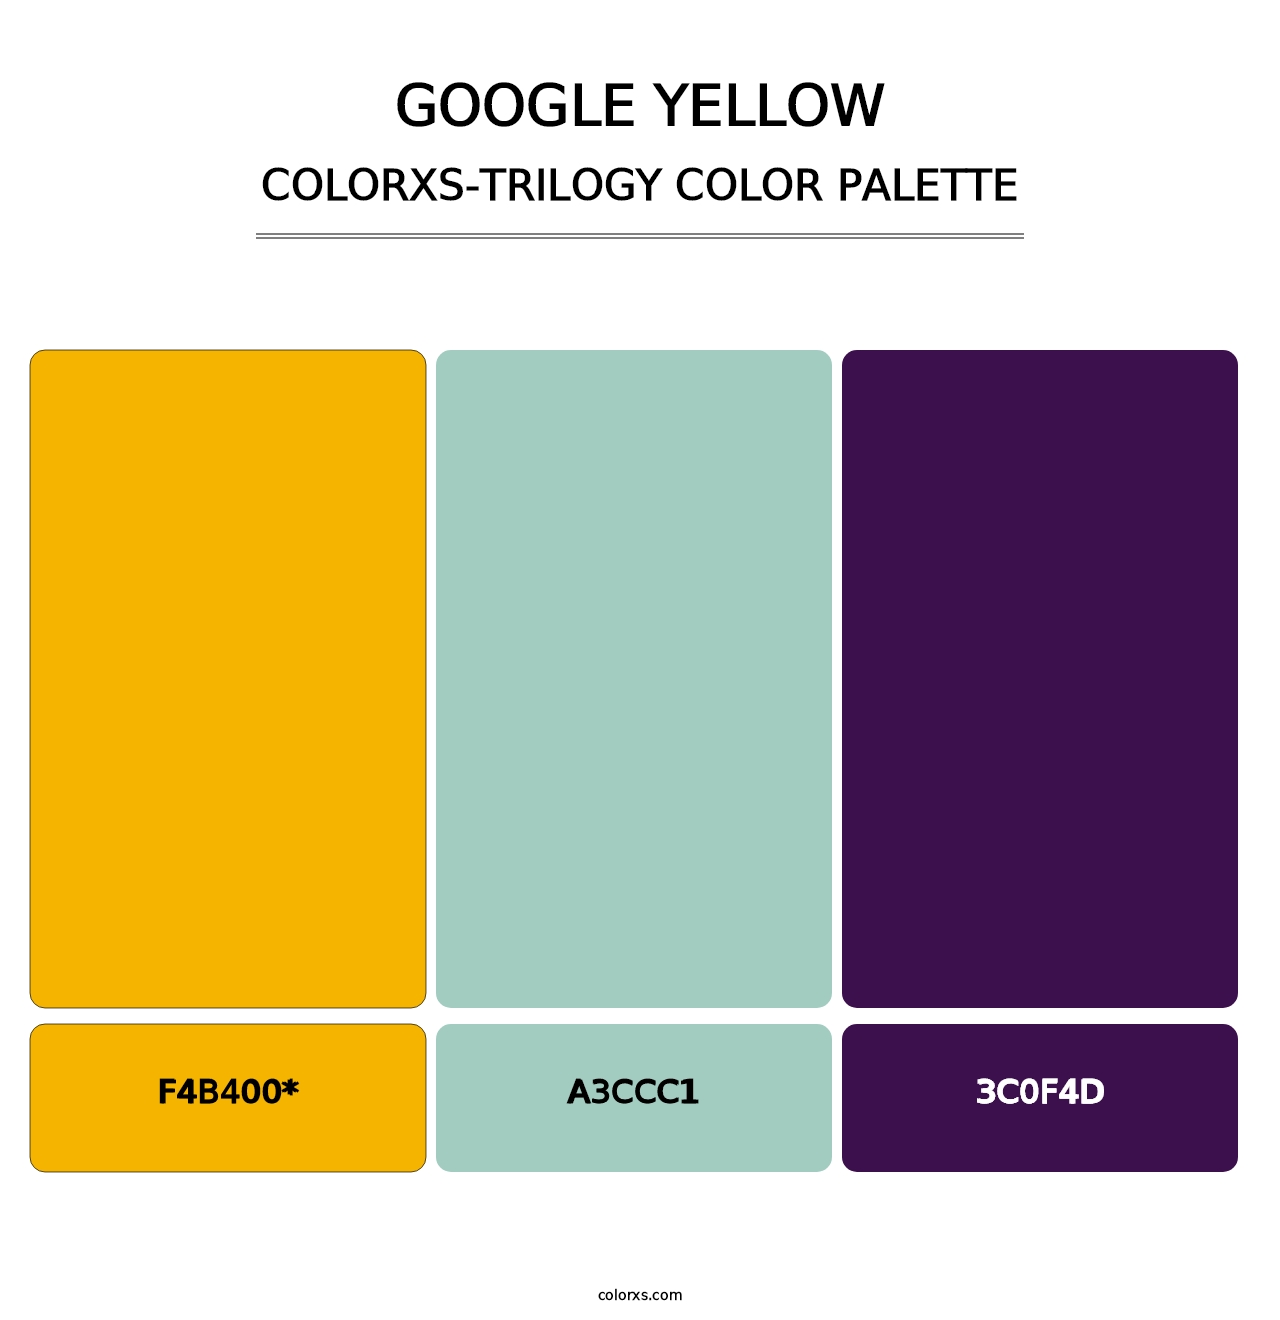 Google Yellow - Colorxs Trilogy Palette